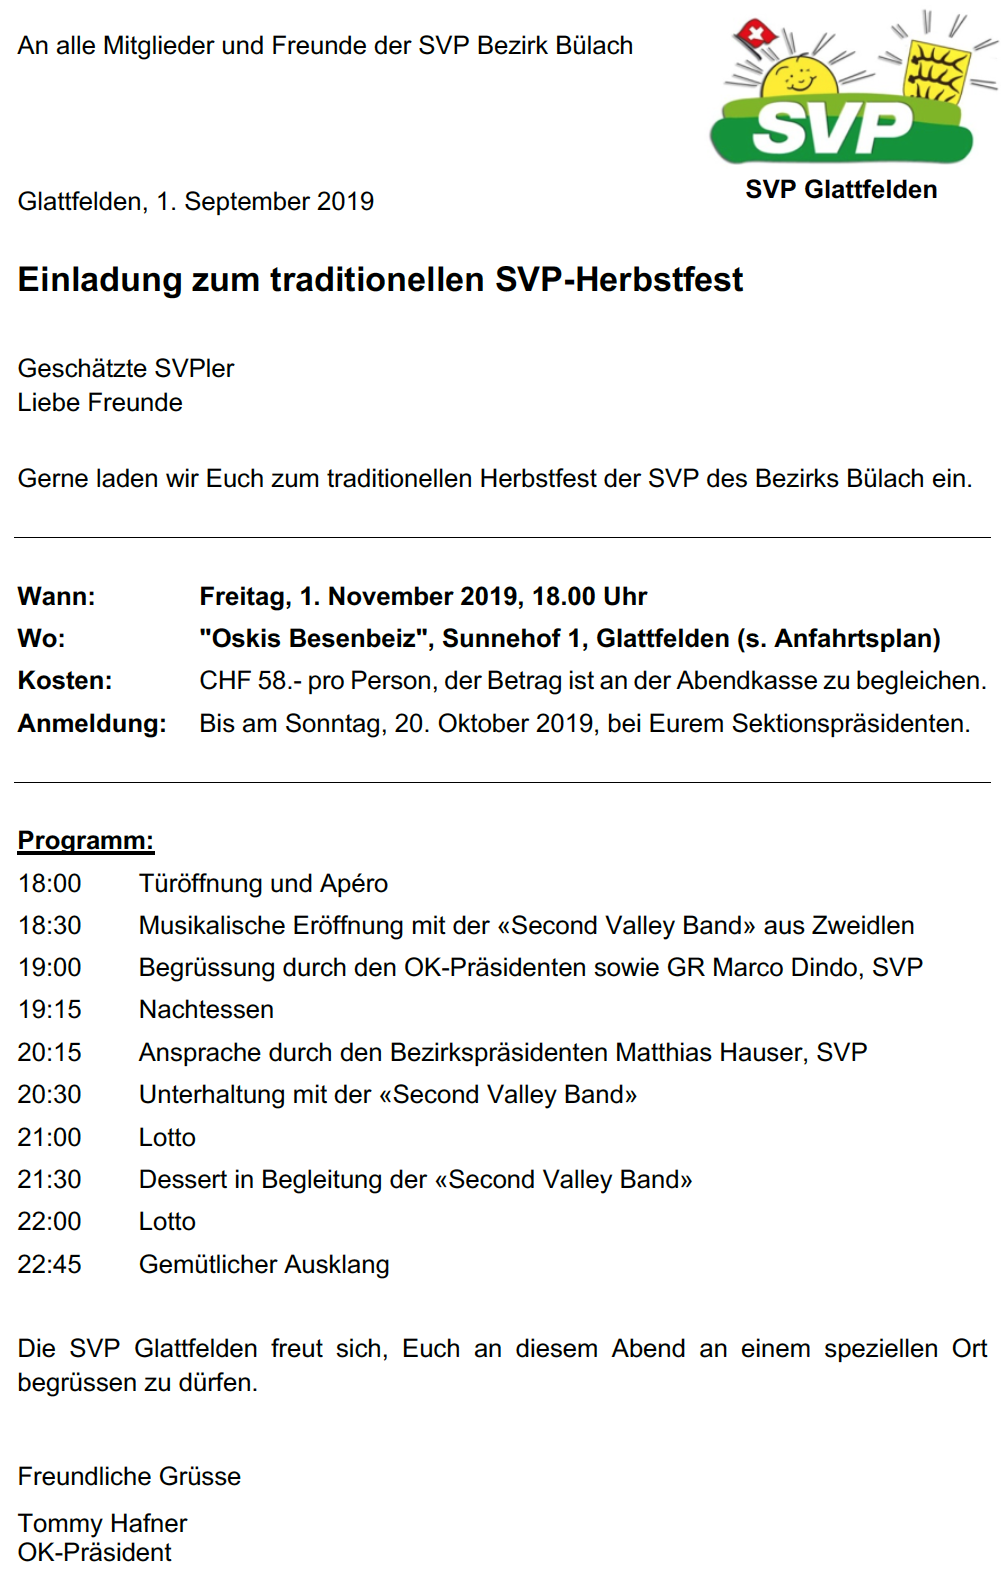 Einladung zum traditionellen Herbstfest der SVP Bezirk Bülach am 1. November 2019 in Glattfelden